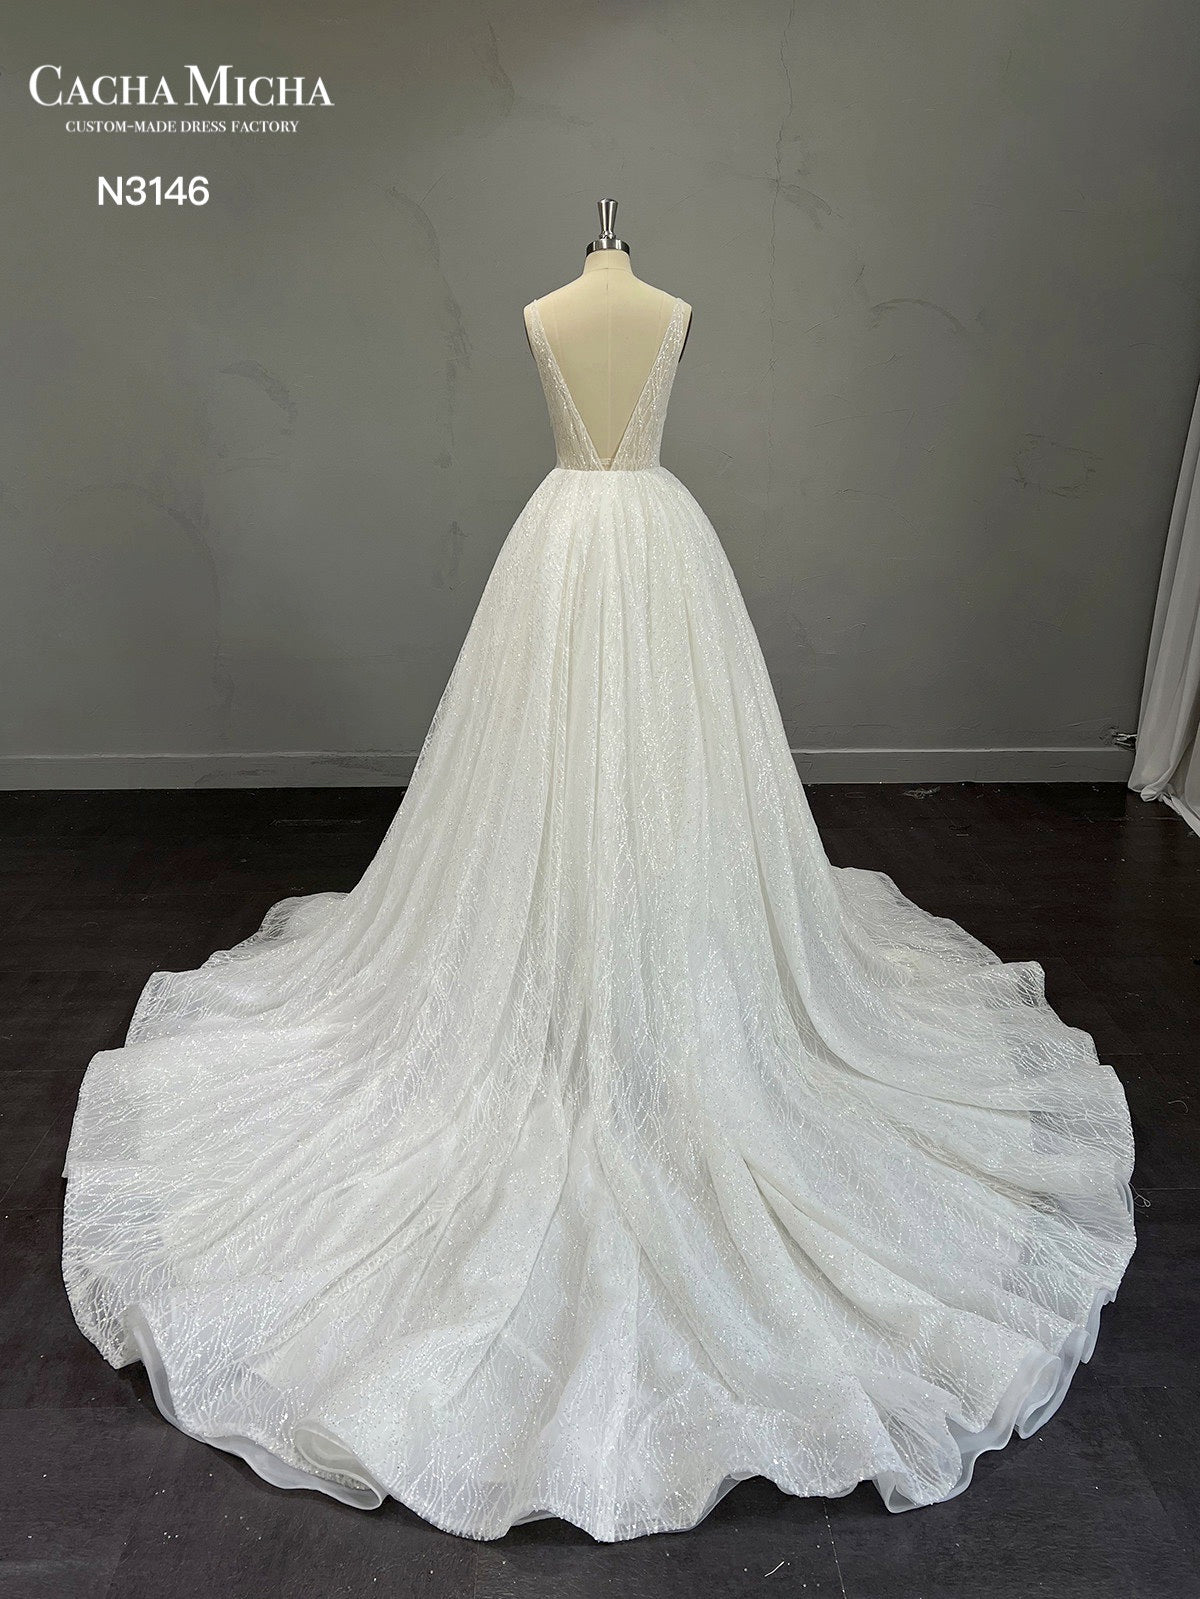 Stunning Glitter Ball Gown Wedding Dress N3146